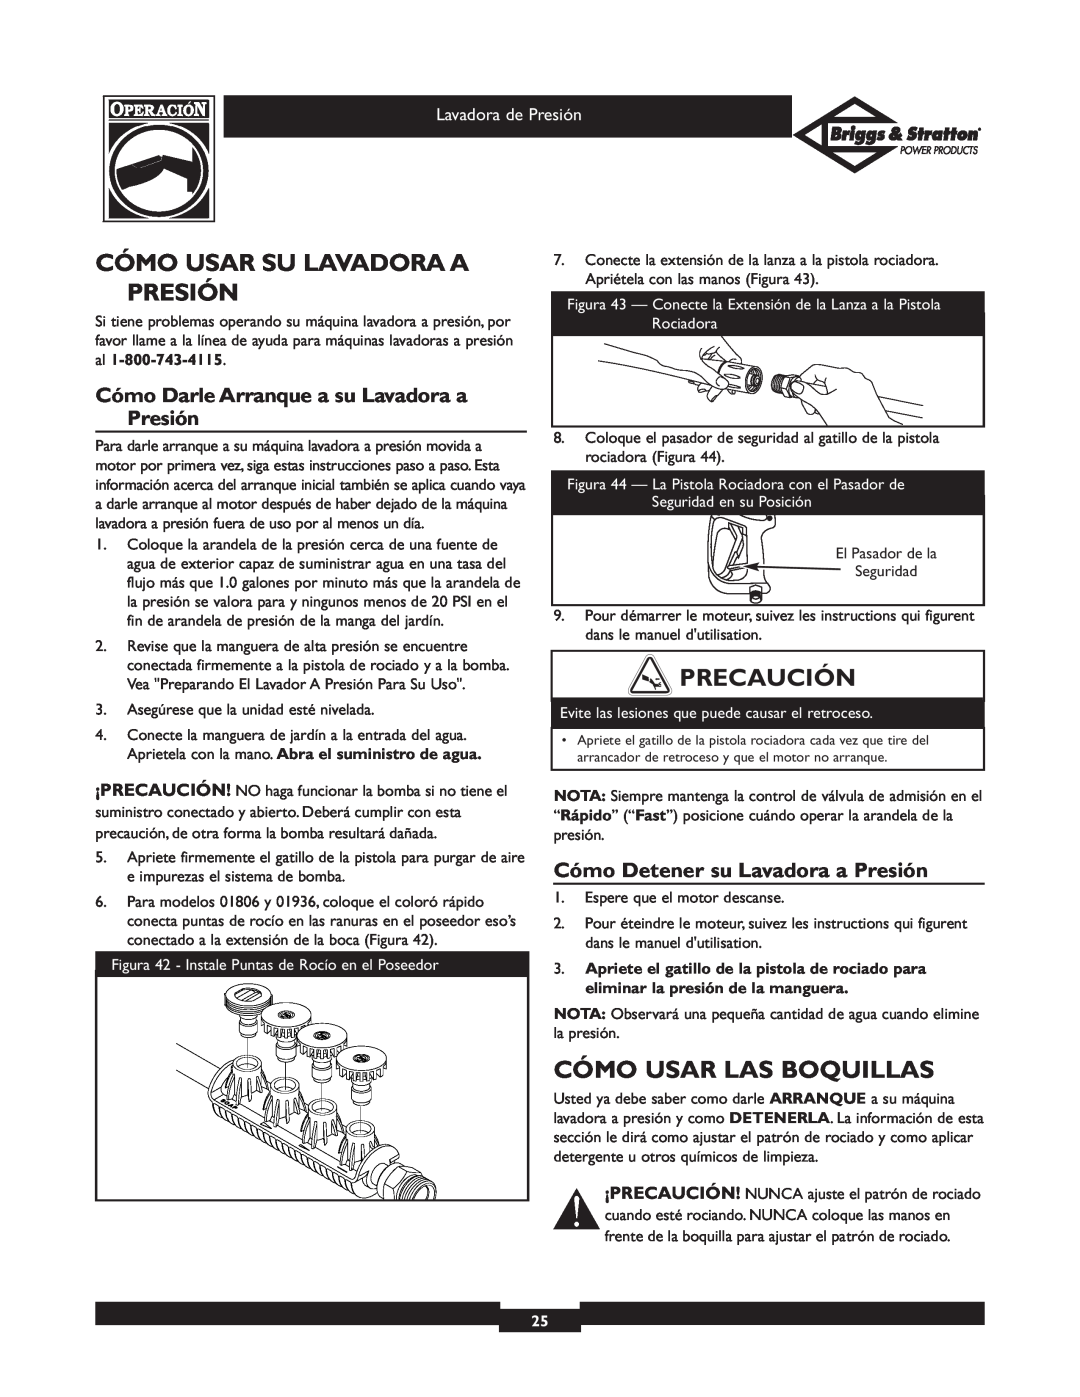 Briggs & Stratton 01936 Cómo Usar Su Lavadora A Presión, Cómo Usar Las Boquillas, Cómo Detener su Lavadora a Presión 